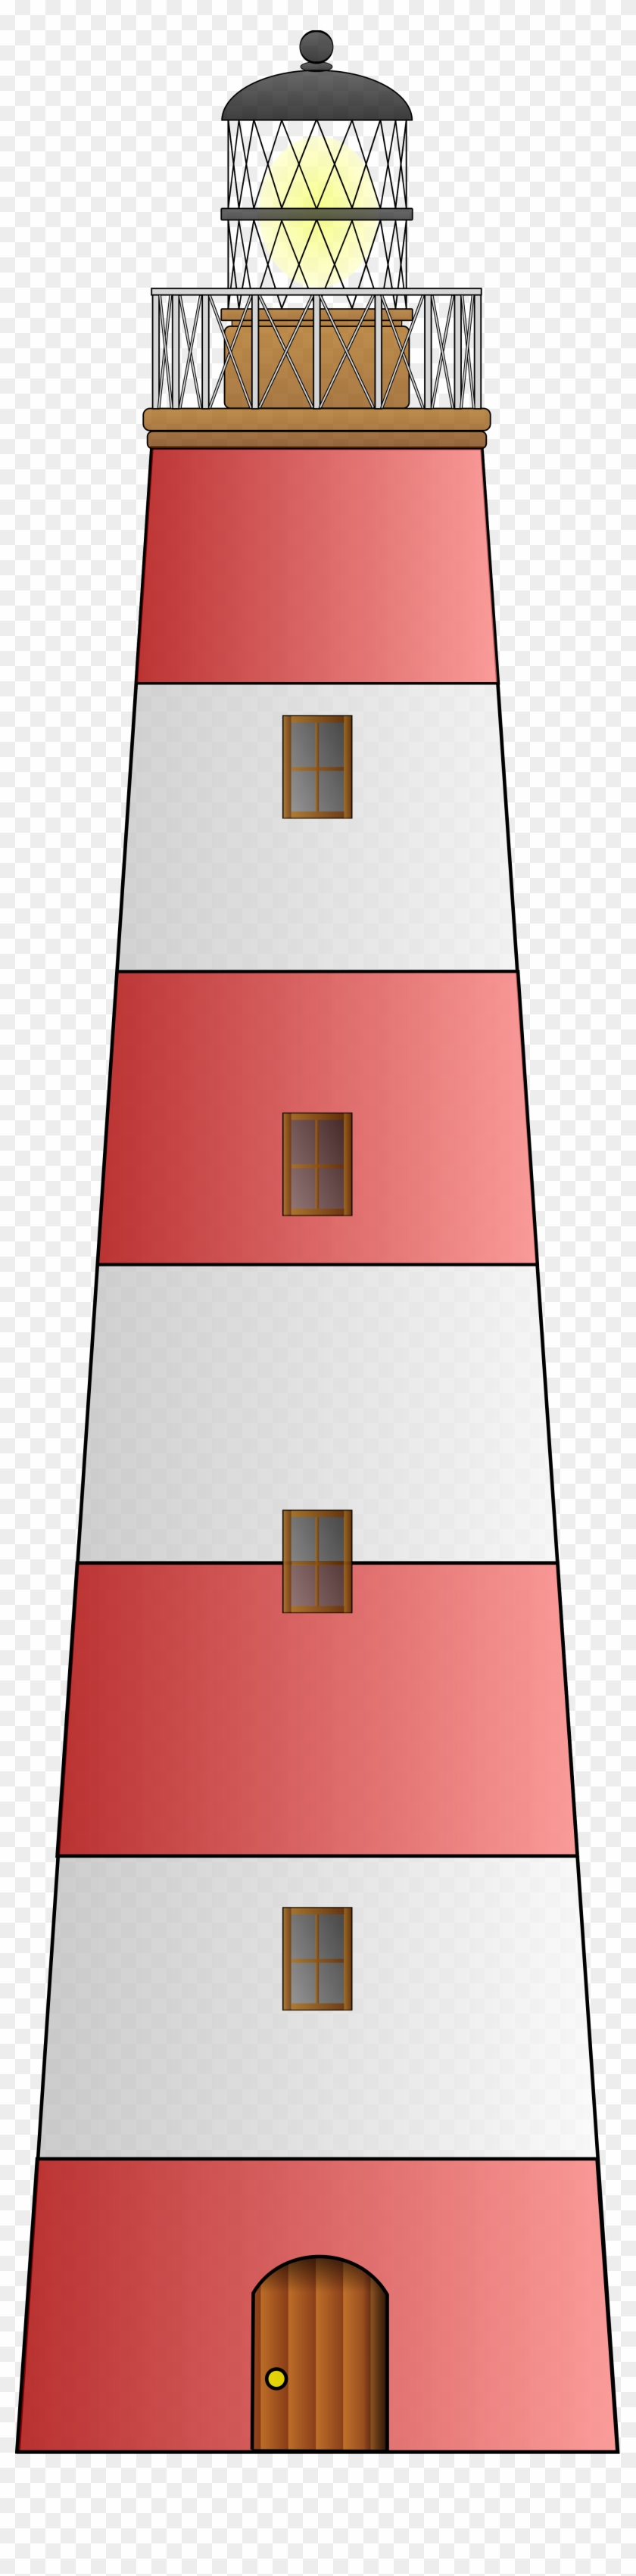 File - Lighthouse - Svg - Lighthouse Clip Art #363646